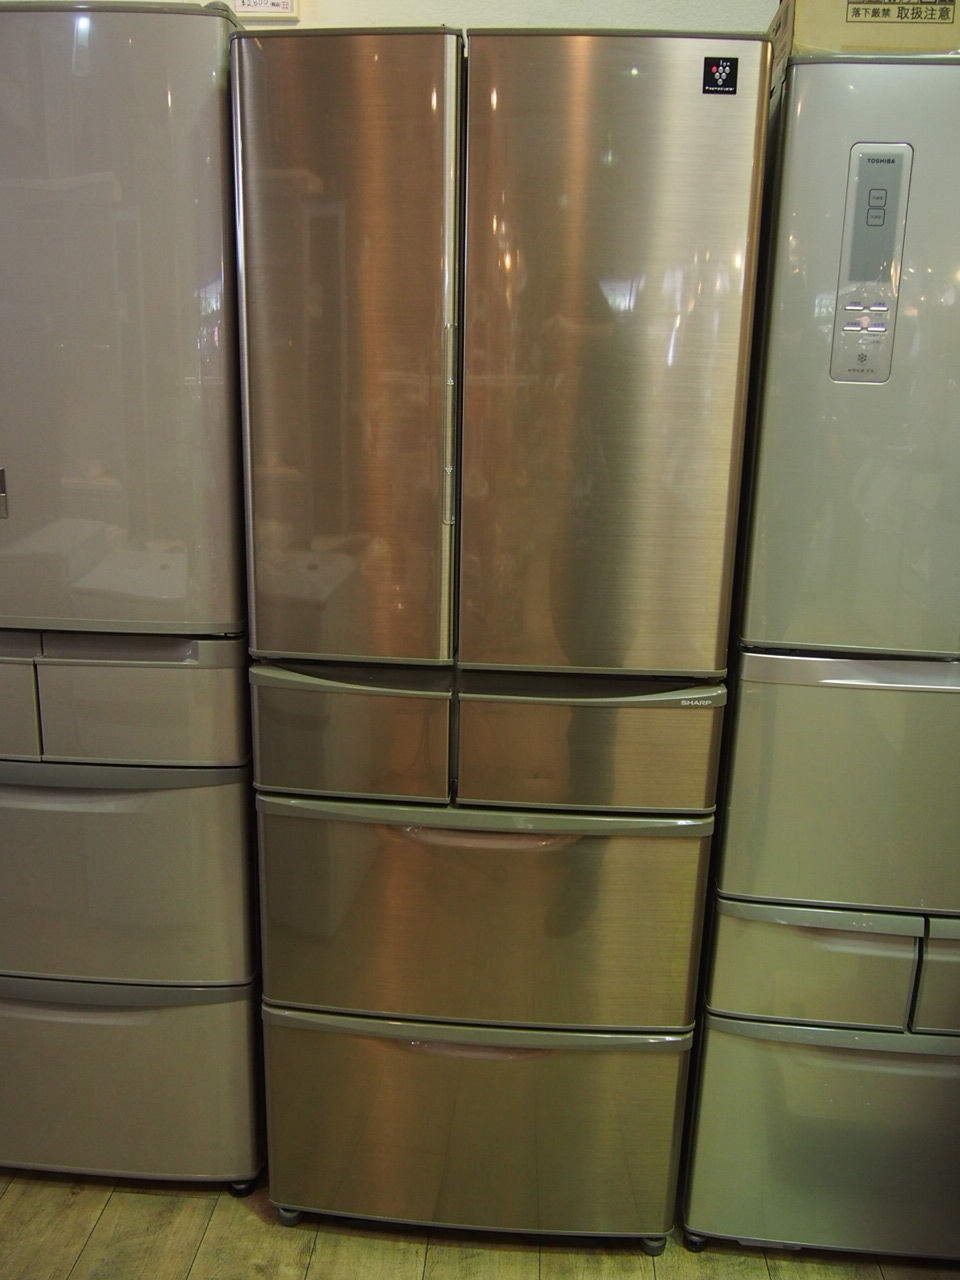 シャープ プラズマクラスター冷蔵庫 SJ-XF44Y-T プレミアムブラウン 